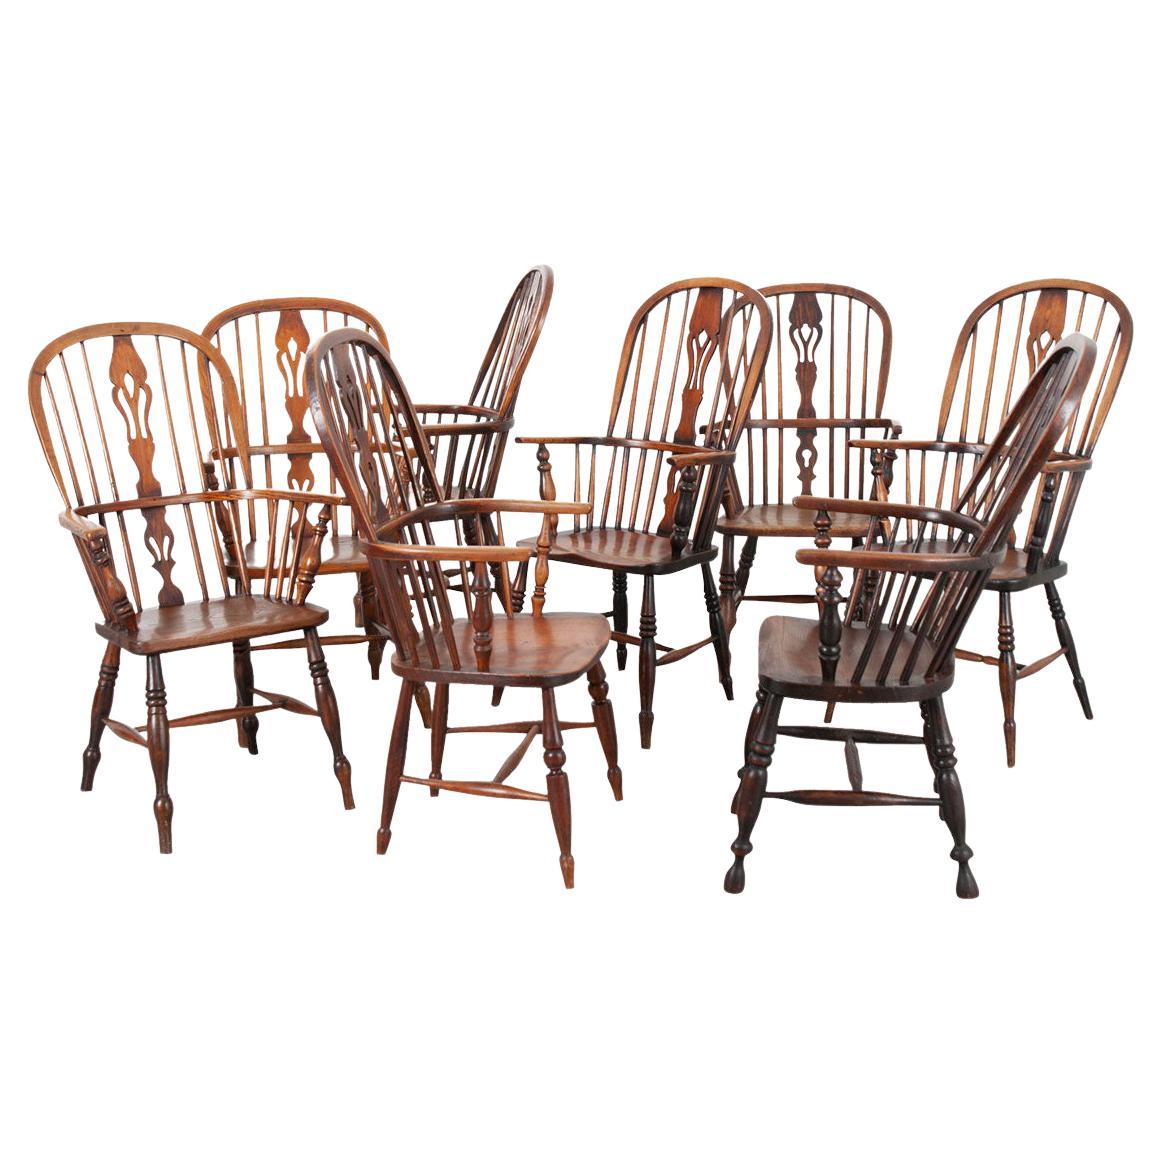 Ensemble de 8 chaises Windsor en chêne du 19ème siècle anglais